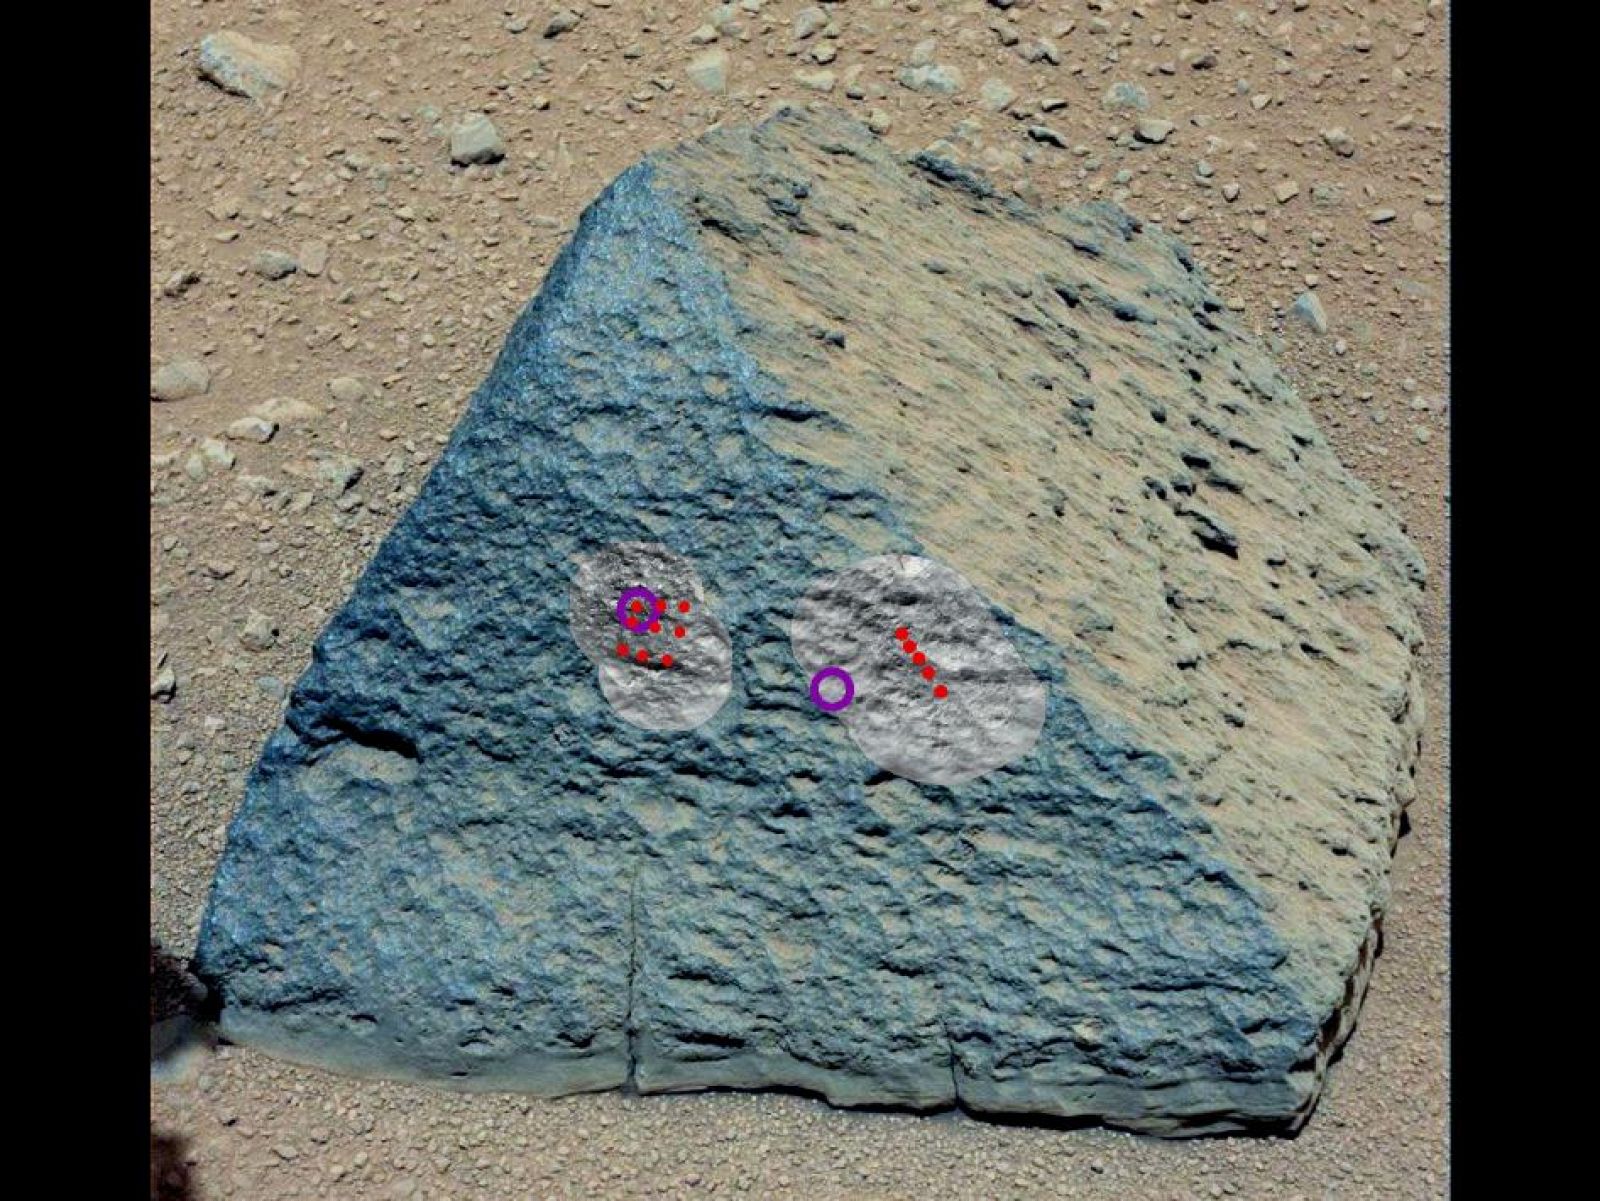 La web de la NASA muestra la piedra, que tiene forma piramidal.